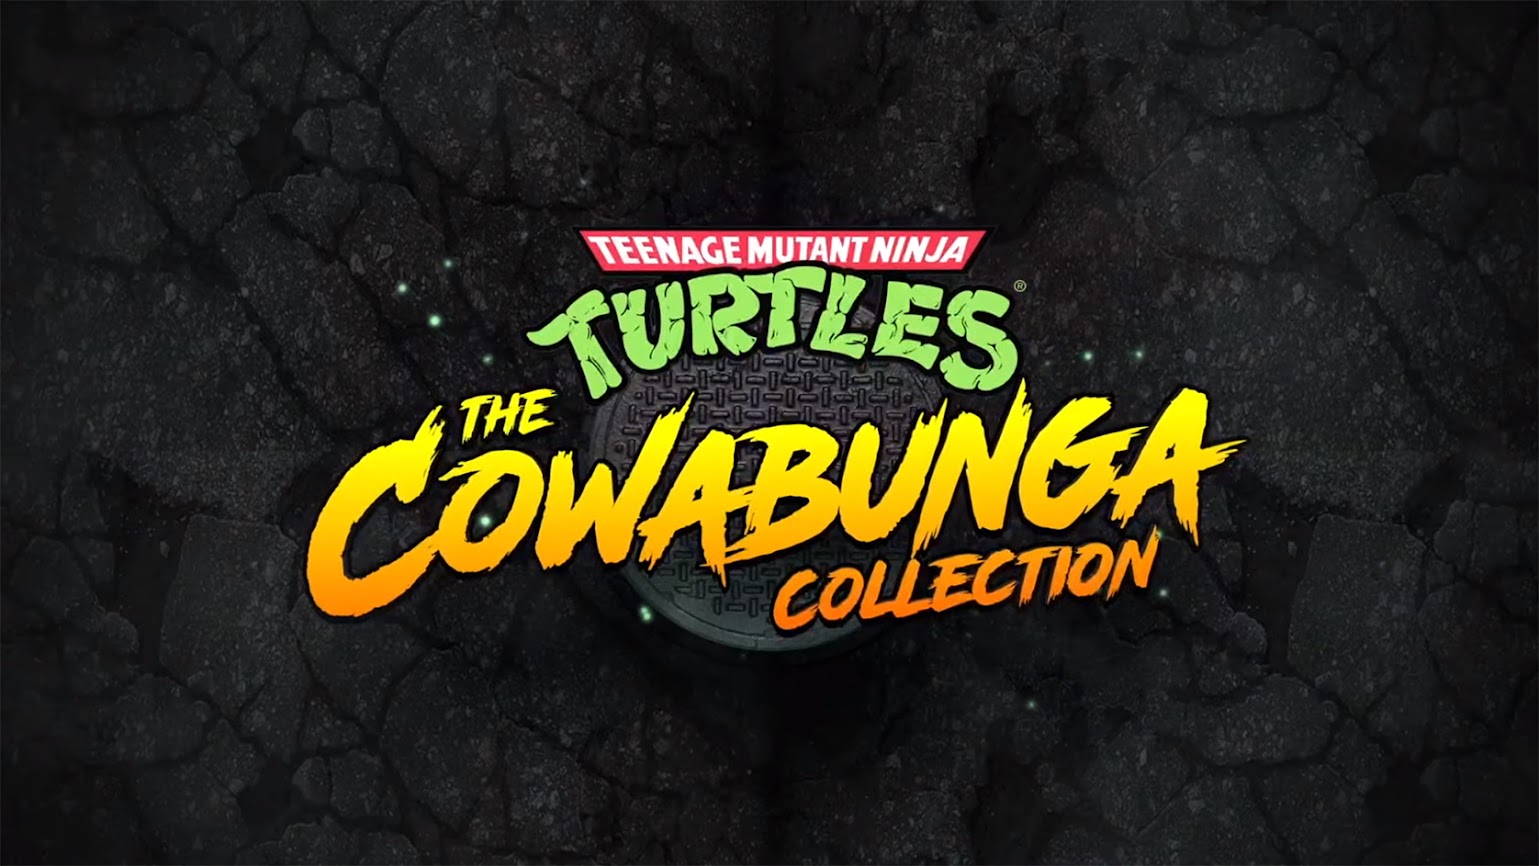 Teenage Collection Revealed Ninja Turtles: The Cowabunga Mutant